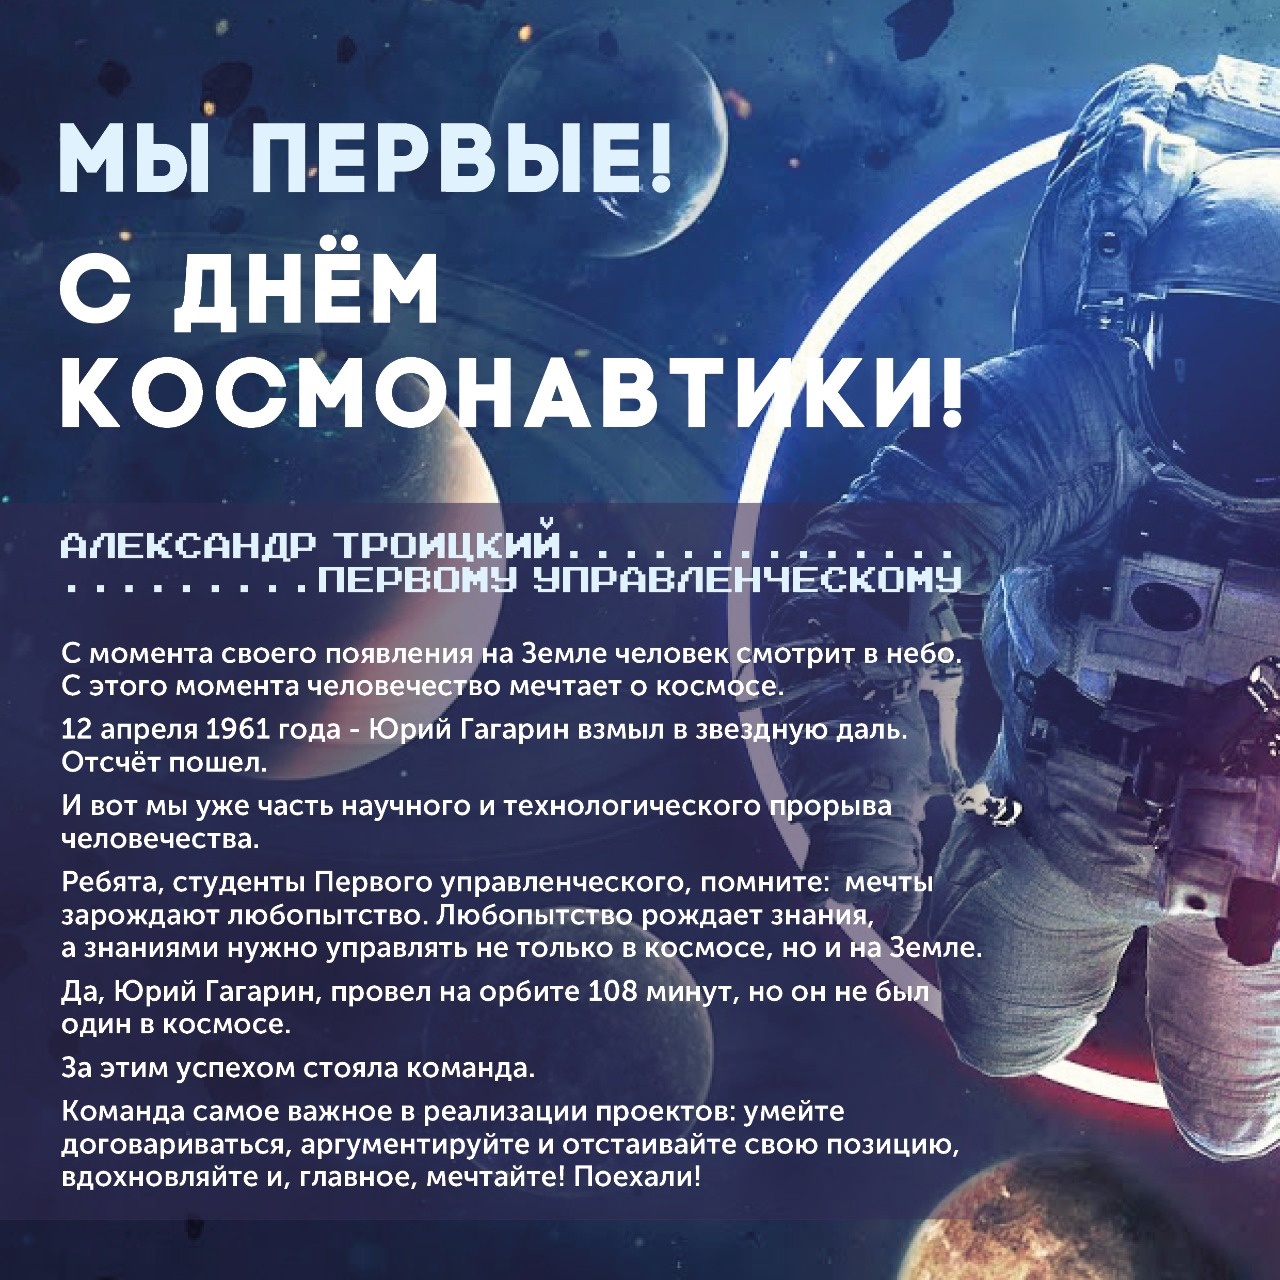 Сегодня 12 апреля - День Космонавтики!